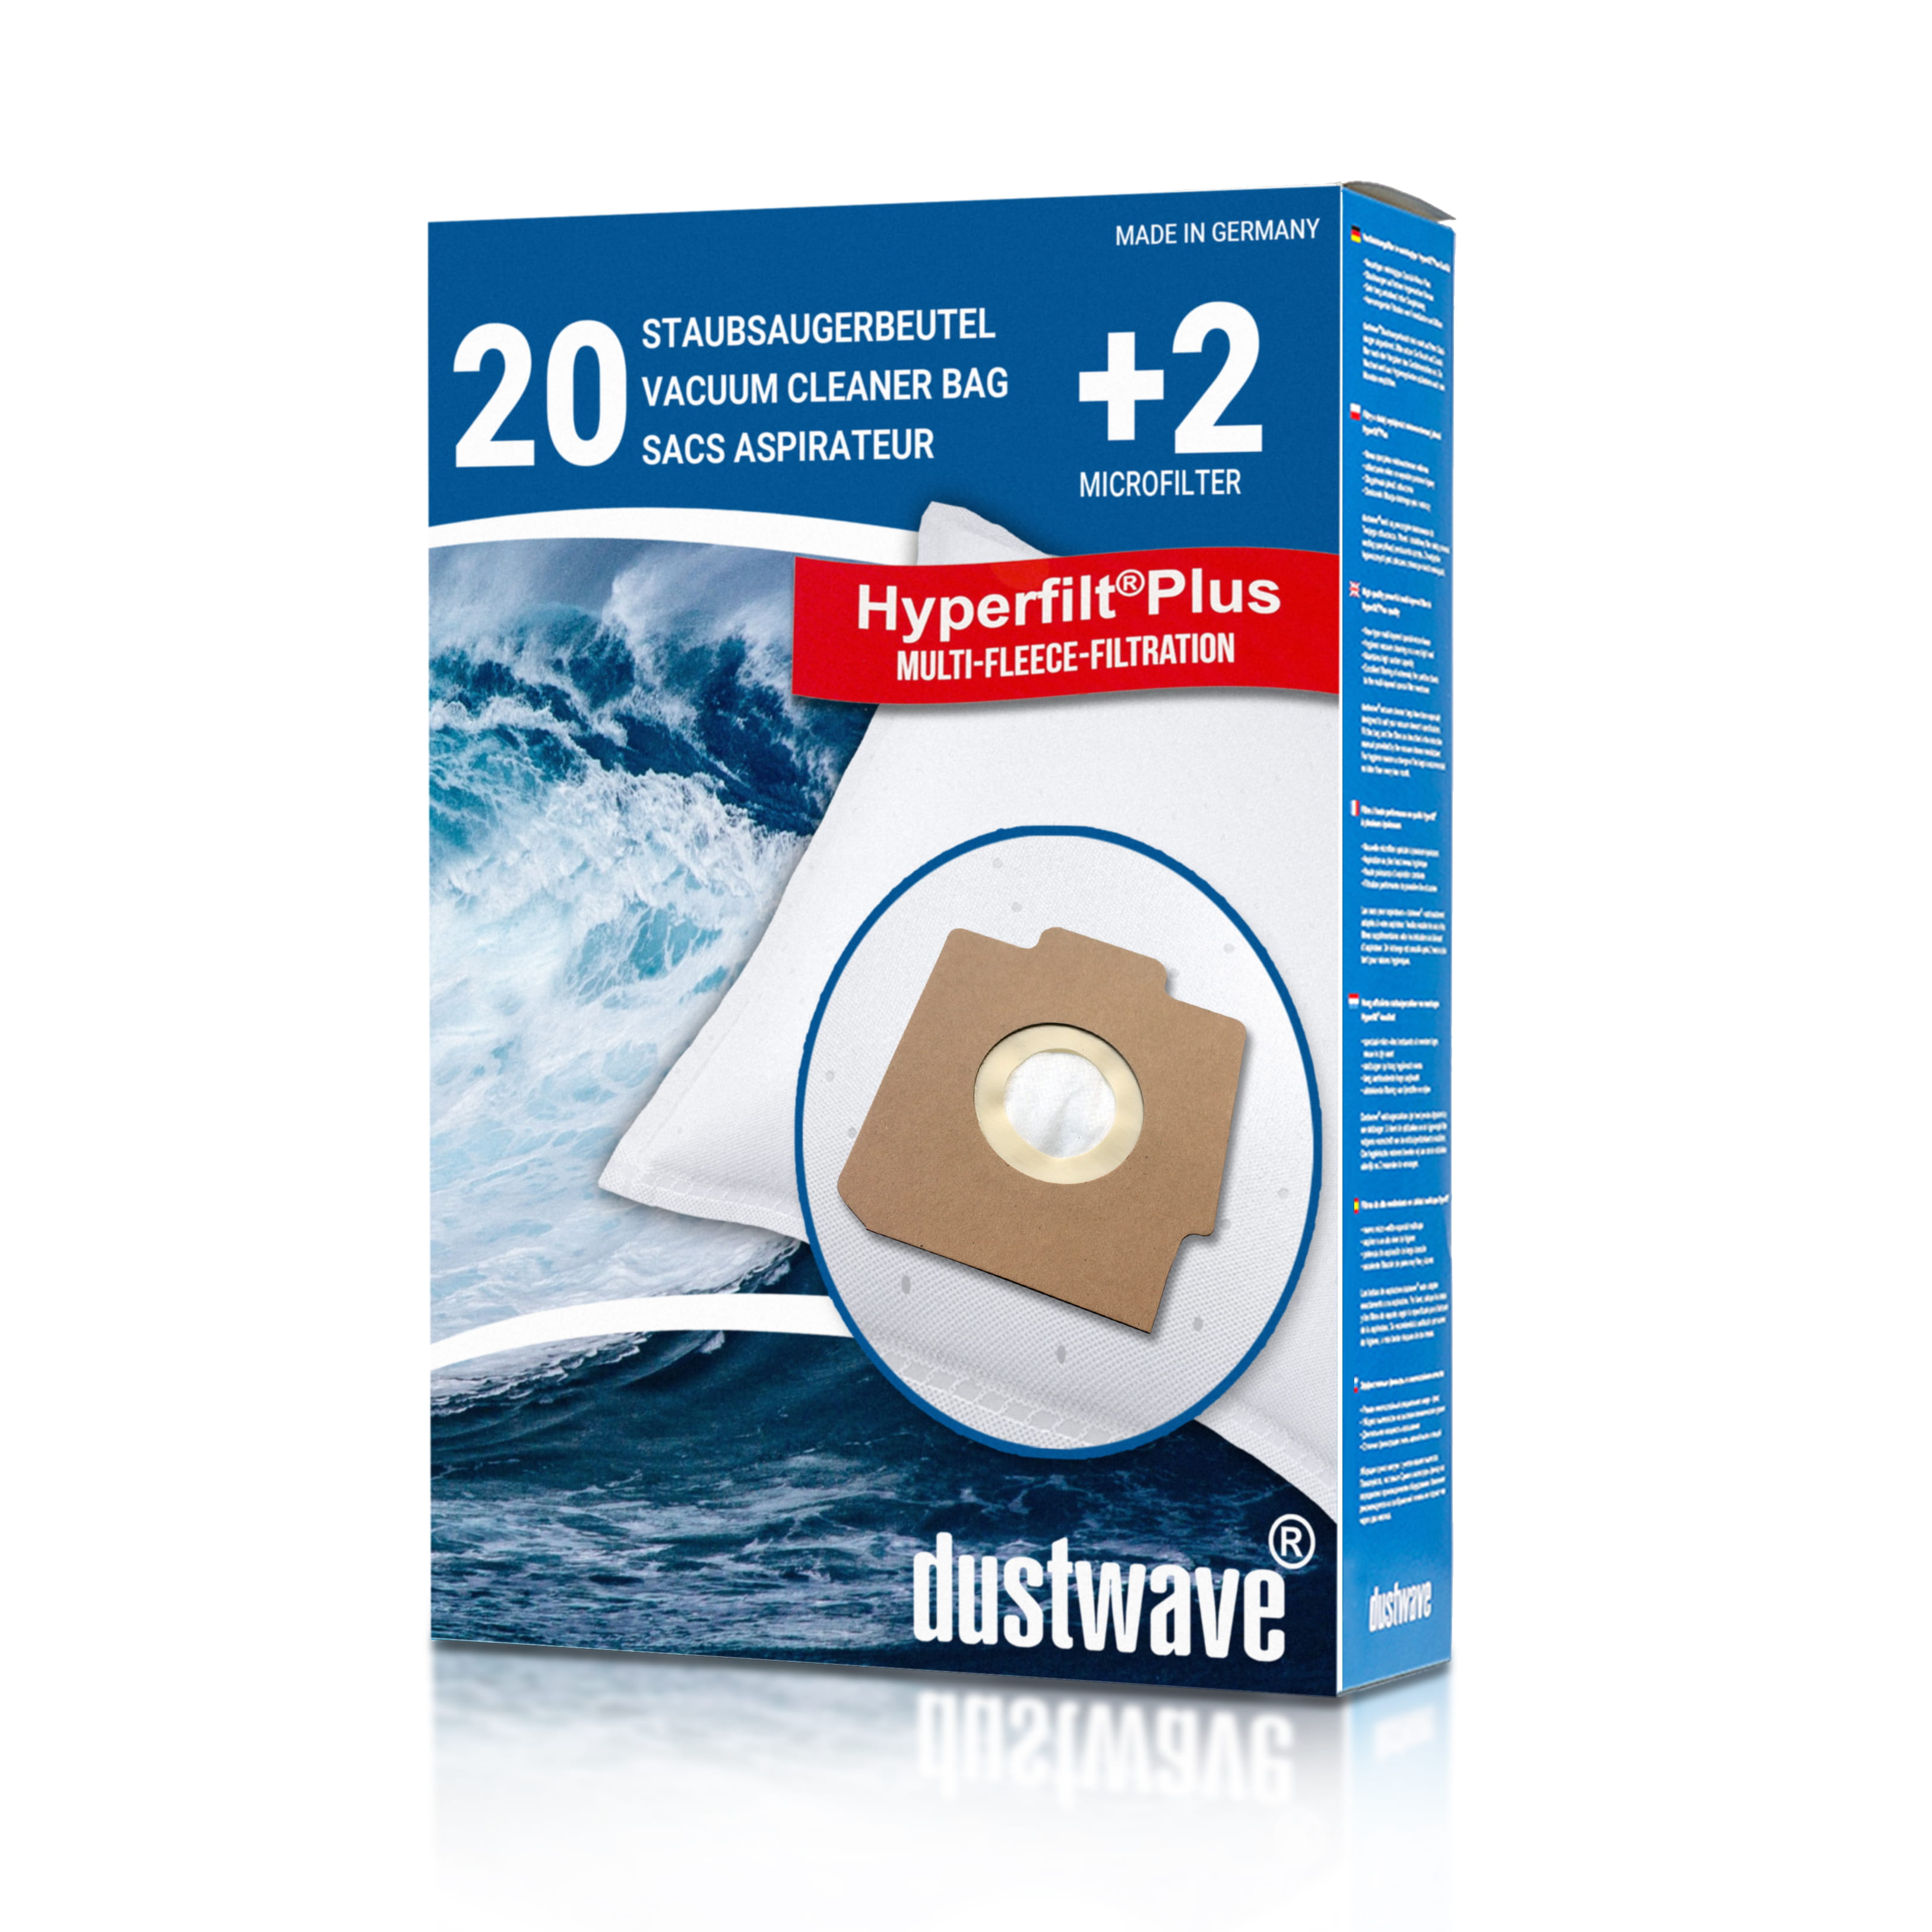 Dustwave® 20 Staubsaugerbeutel für Hoover SC218... / TRSC218 - hocheffizient, mehrlagiges Mikrovlies mit Hygieneverschluss - Made in Germany